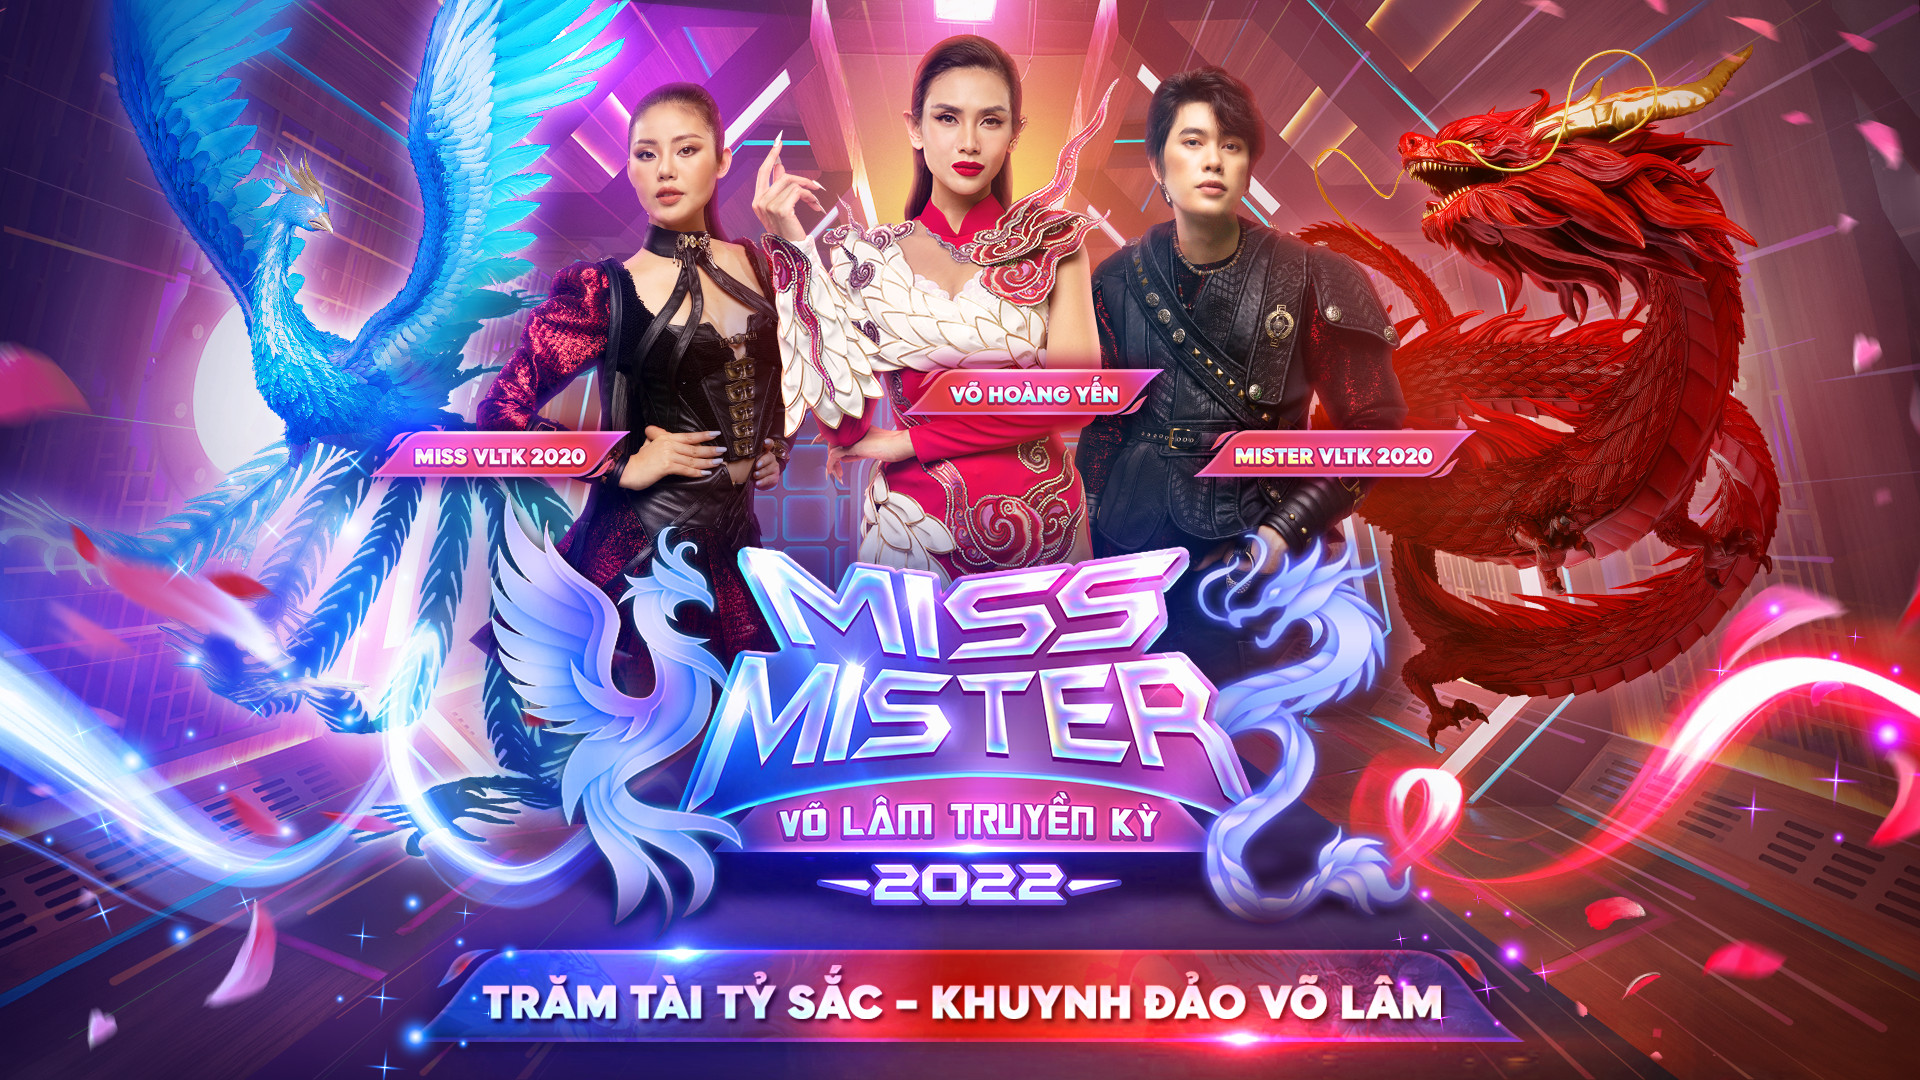 Sàn đấu tài - sắc Miss & Mister Võ Lâm Truyền Kỳ 2022 trở lại với giải thưởng khủng